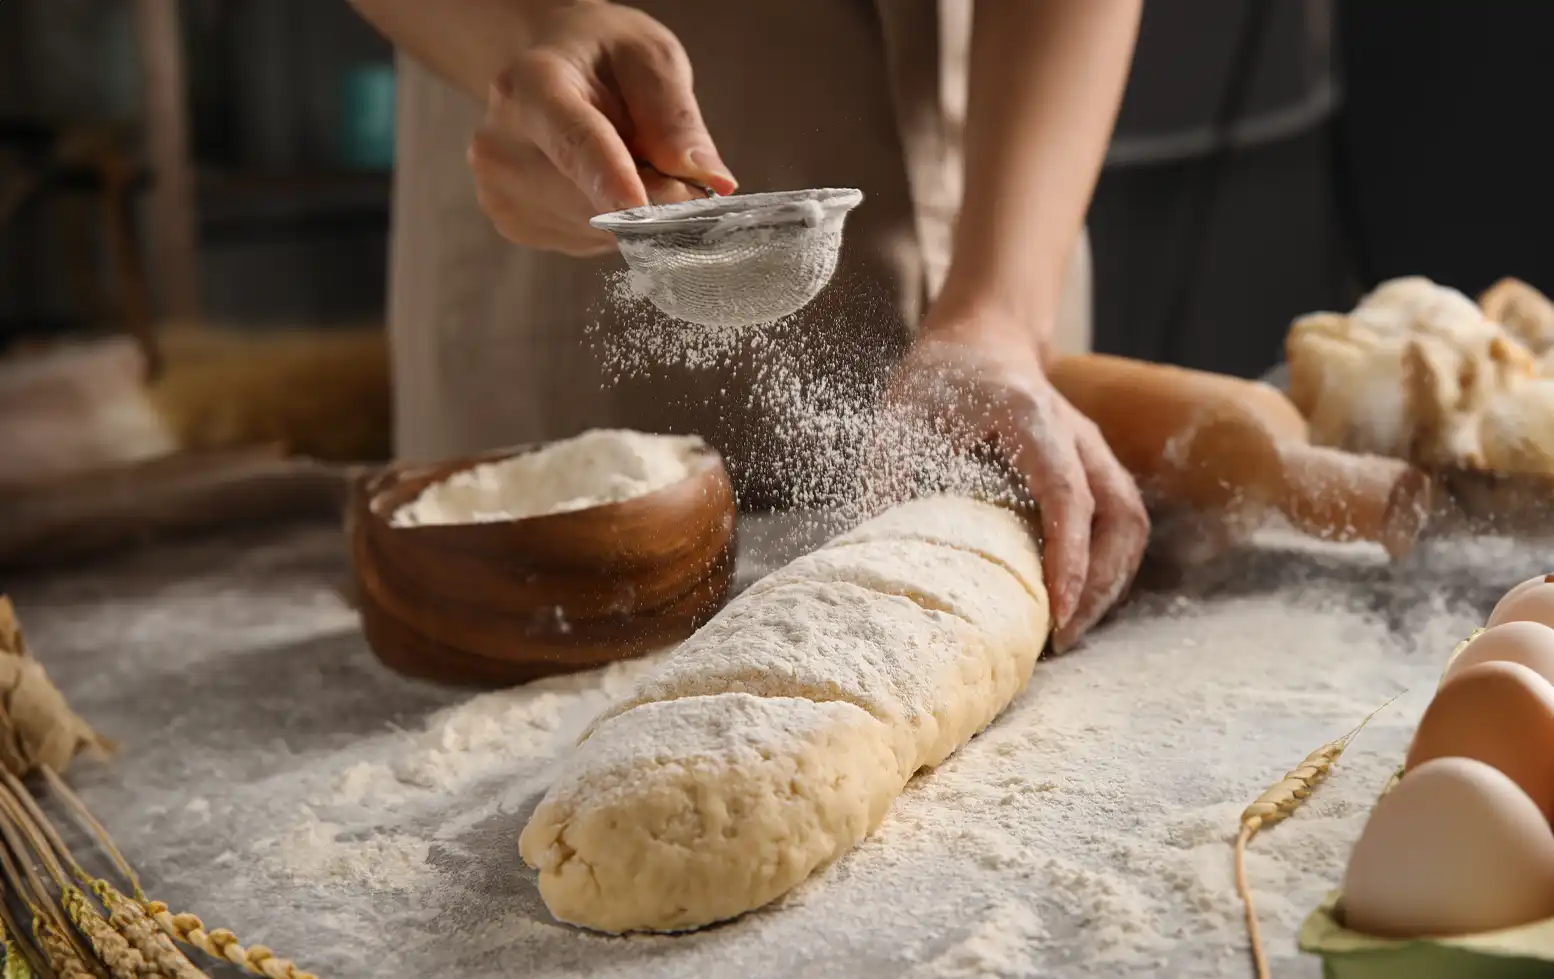 panadera espolvoreando harina sobre una baguette casera